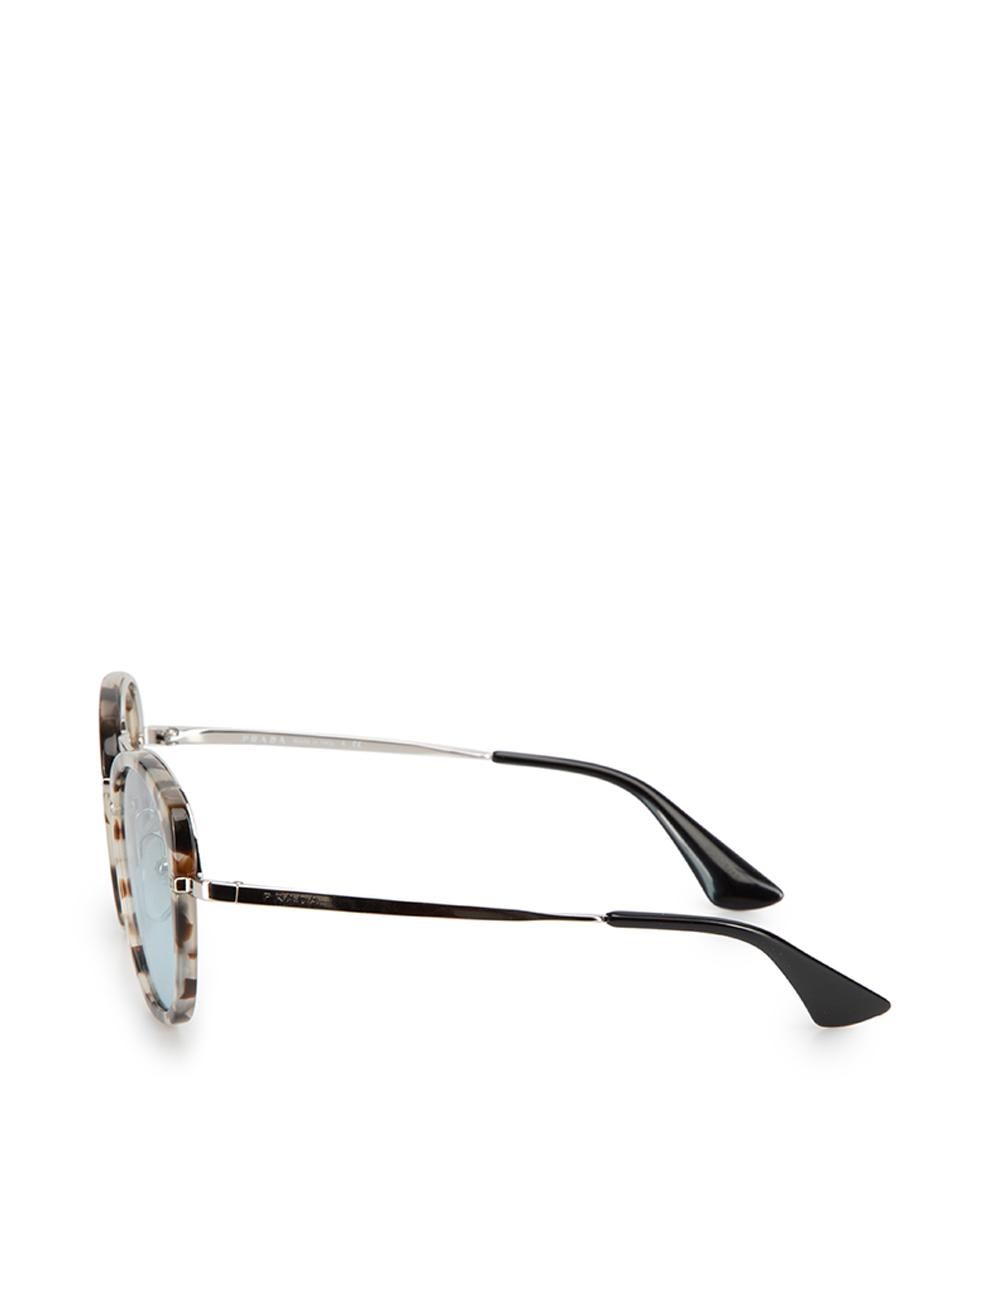 Prada Women's Grey & Brown Tortoiseshell Round Sunglasses 1